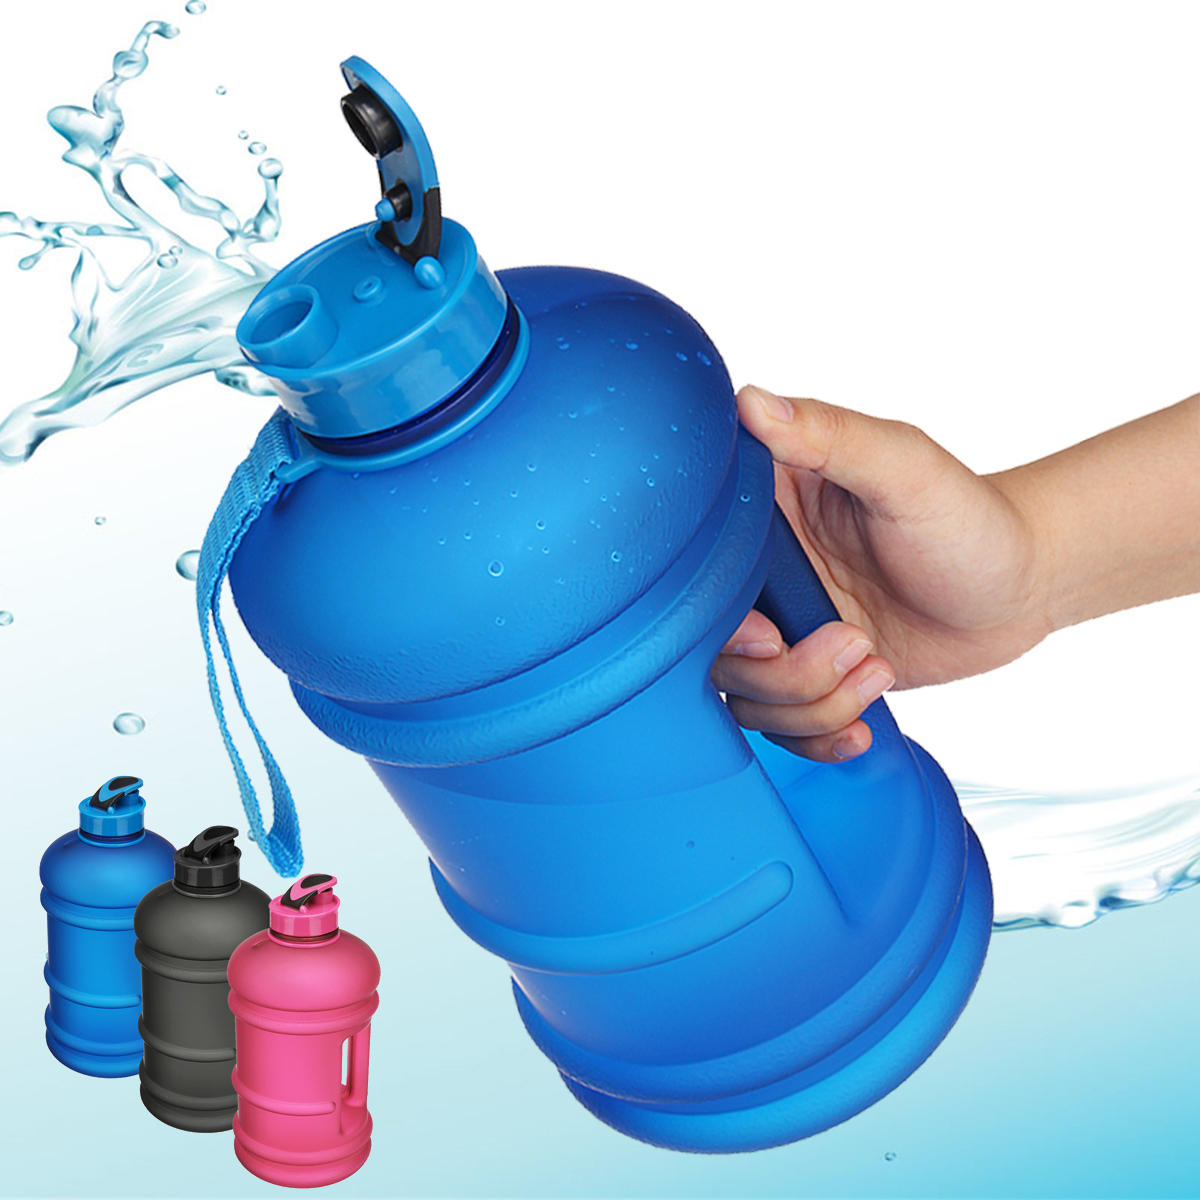 زجاجة ماء رياضية محمولة بسعة 2.2 لتر للرياضة في الهواء الطلق واللياقة البدنية والأدوات الرياضية والمشروبات والماء في الرحلات والتخييم.